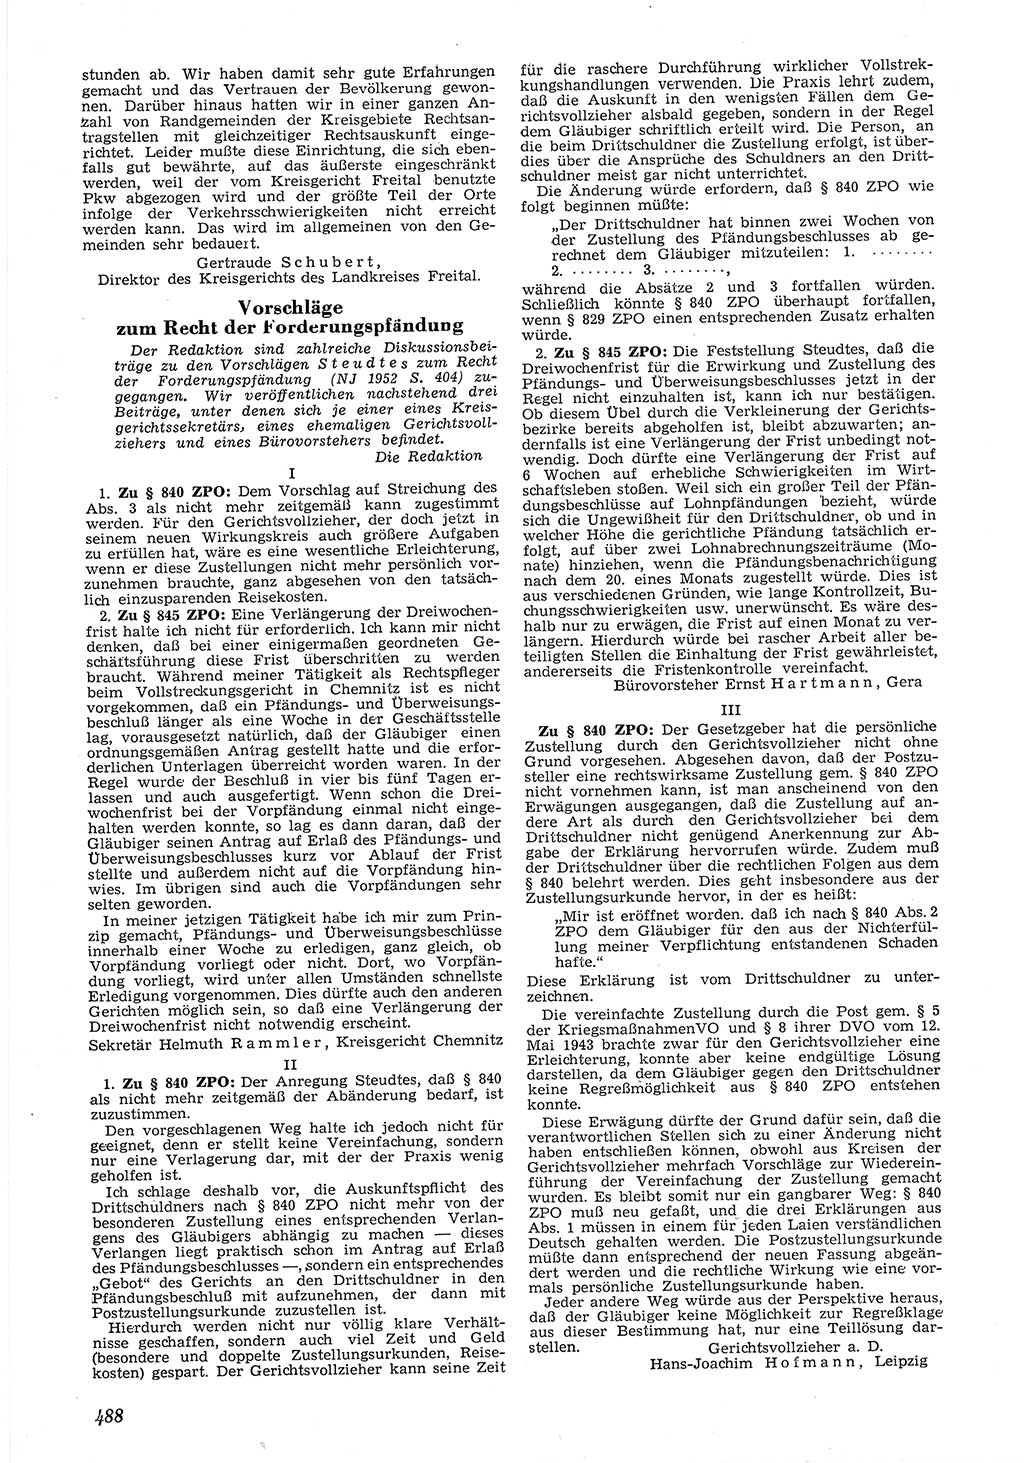 Neue Justiz (NJ), Zeitschrift für Recht und Rechtswissenschaft [Deutsche Demokratische Republik (DDR)], 6. Jahrgang 1952, Seite 488 (NJ DDR 1952, S. 488)